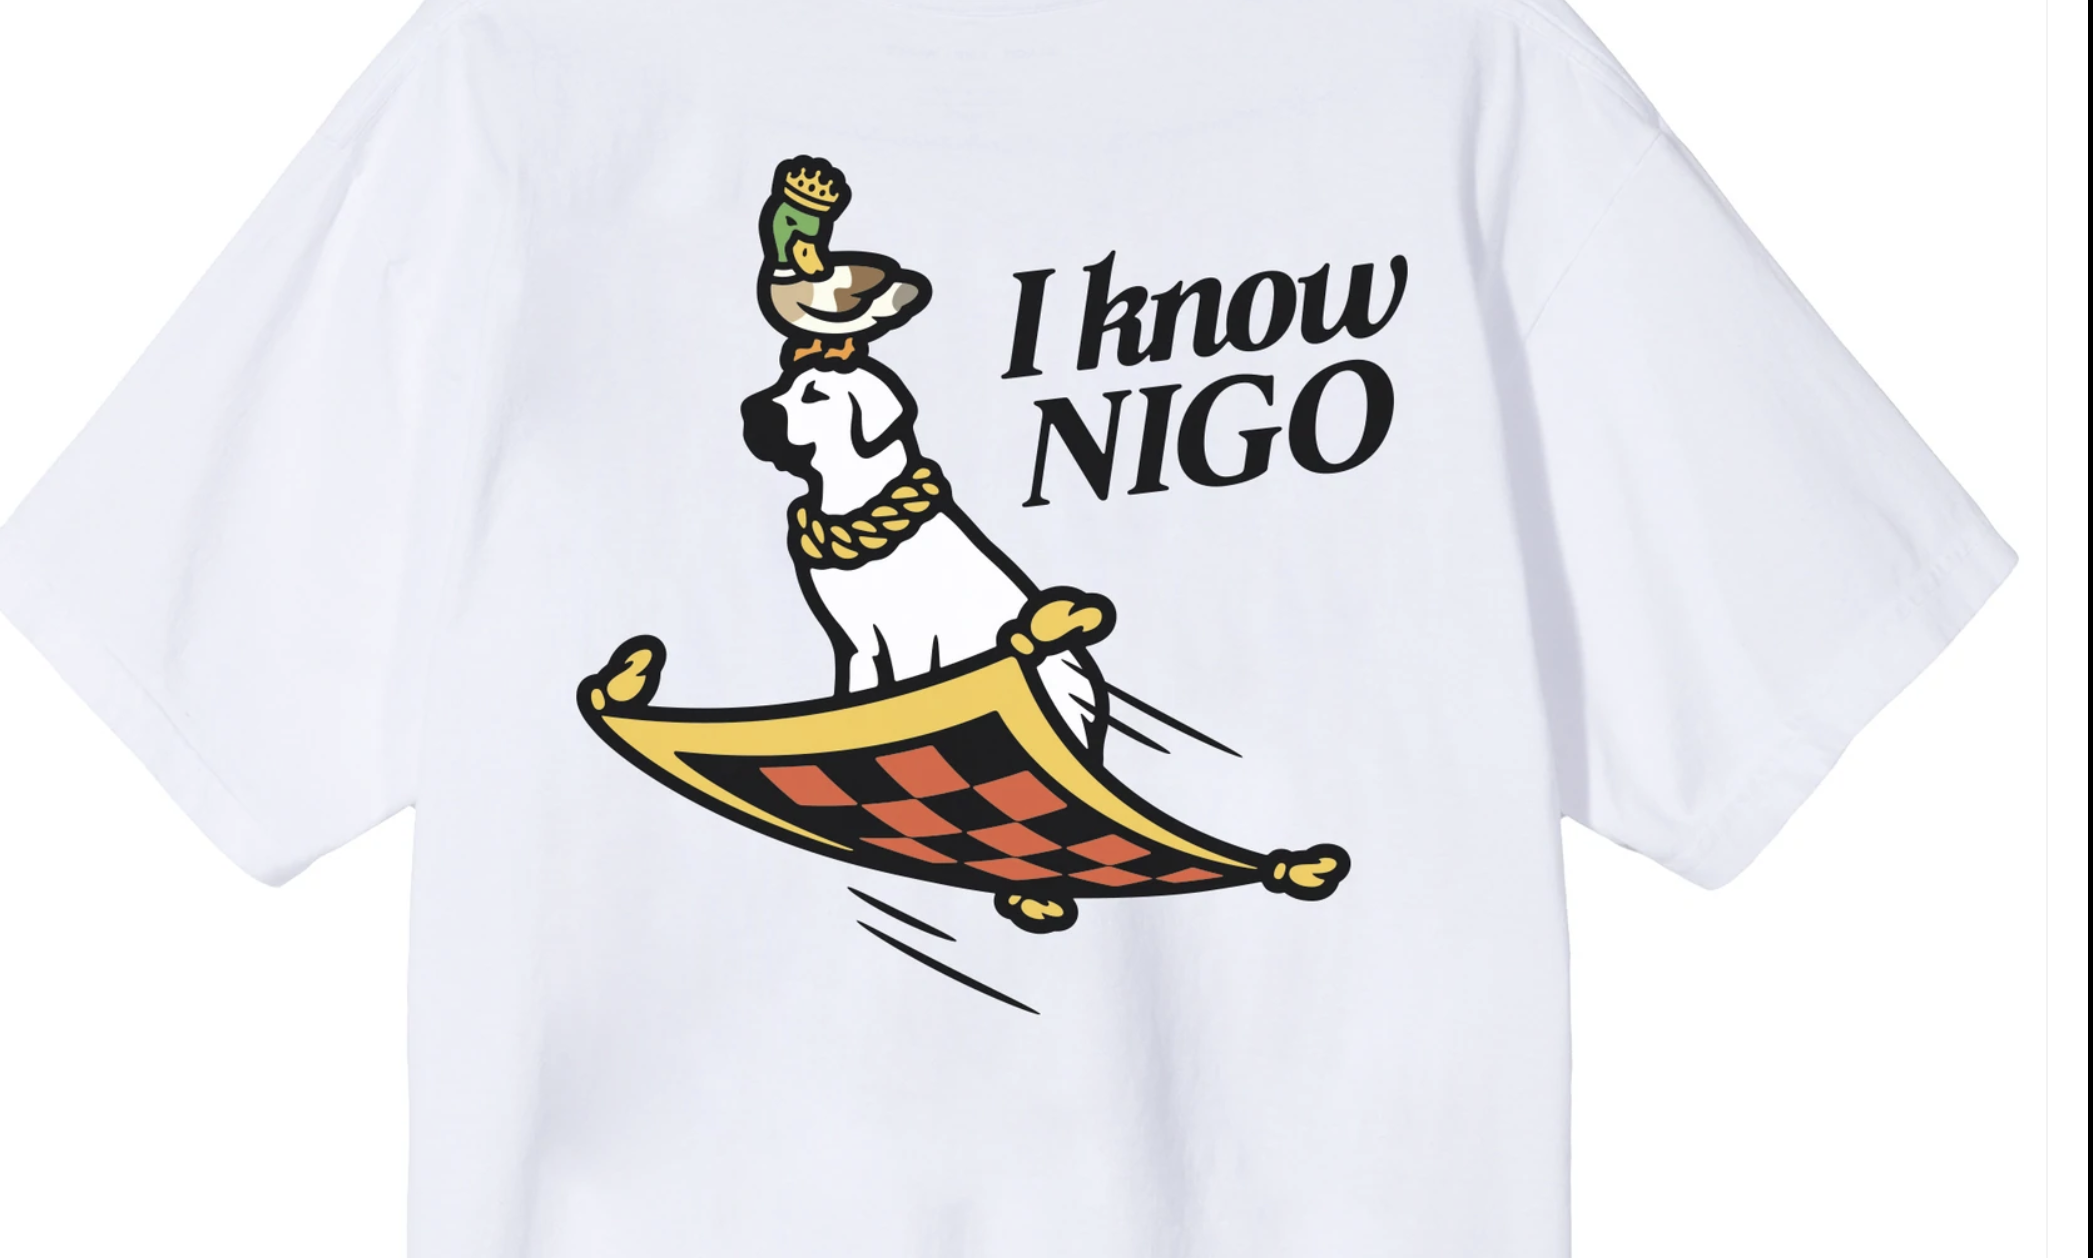 《I KNOW NIGO》专辑套装正式发售